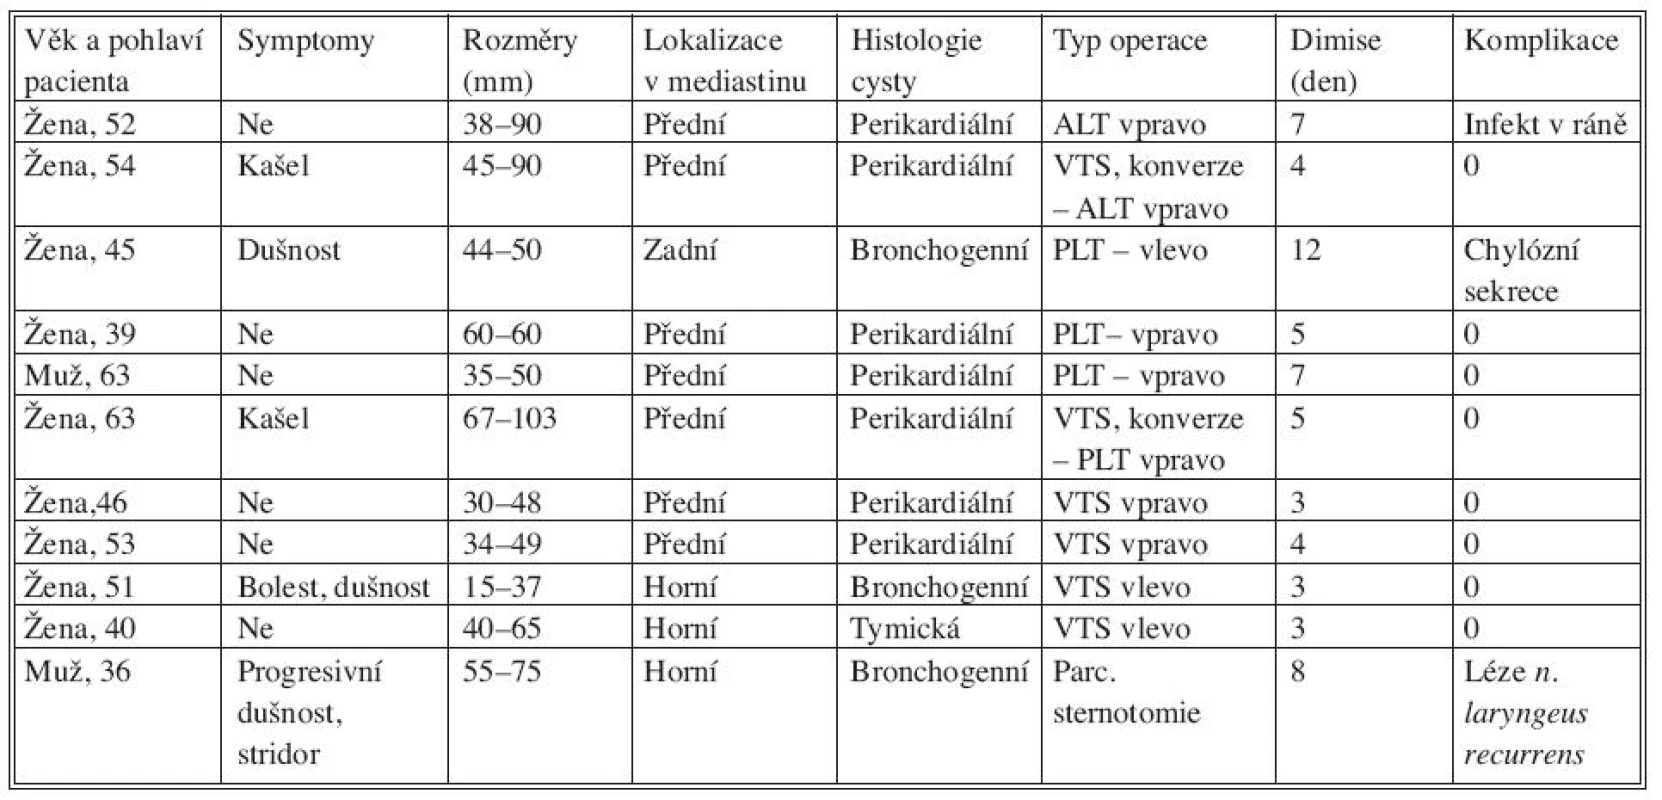 Výsledky prezentovaného souboru (ALT – anterolaterální torakotomie, PLT – posterolaterální torakotomie)
Tab. 1. Results of the presented patient group (ALT – anterolateral thoracotomy, PLT – posterolateral thoracotomy)